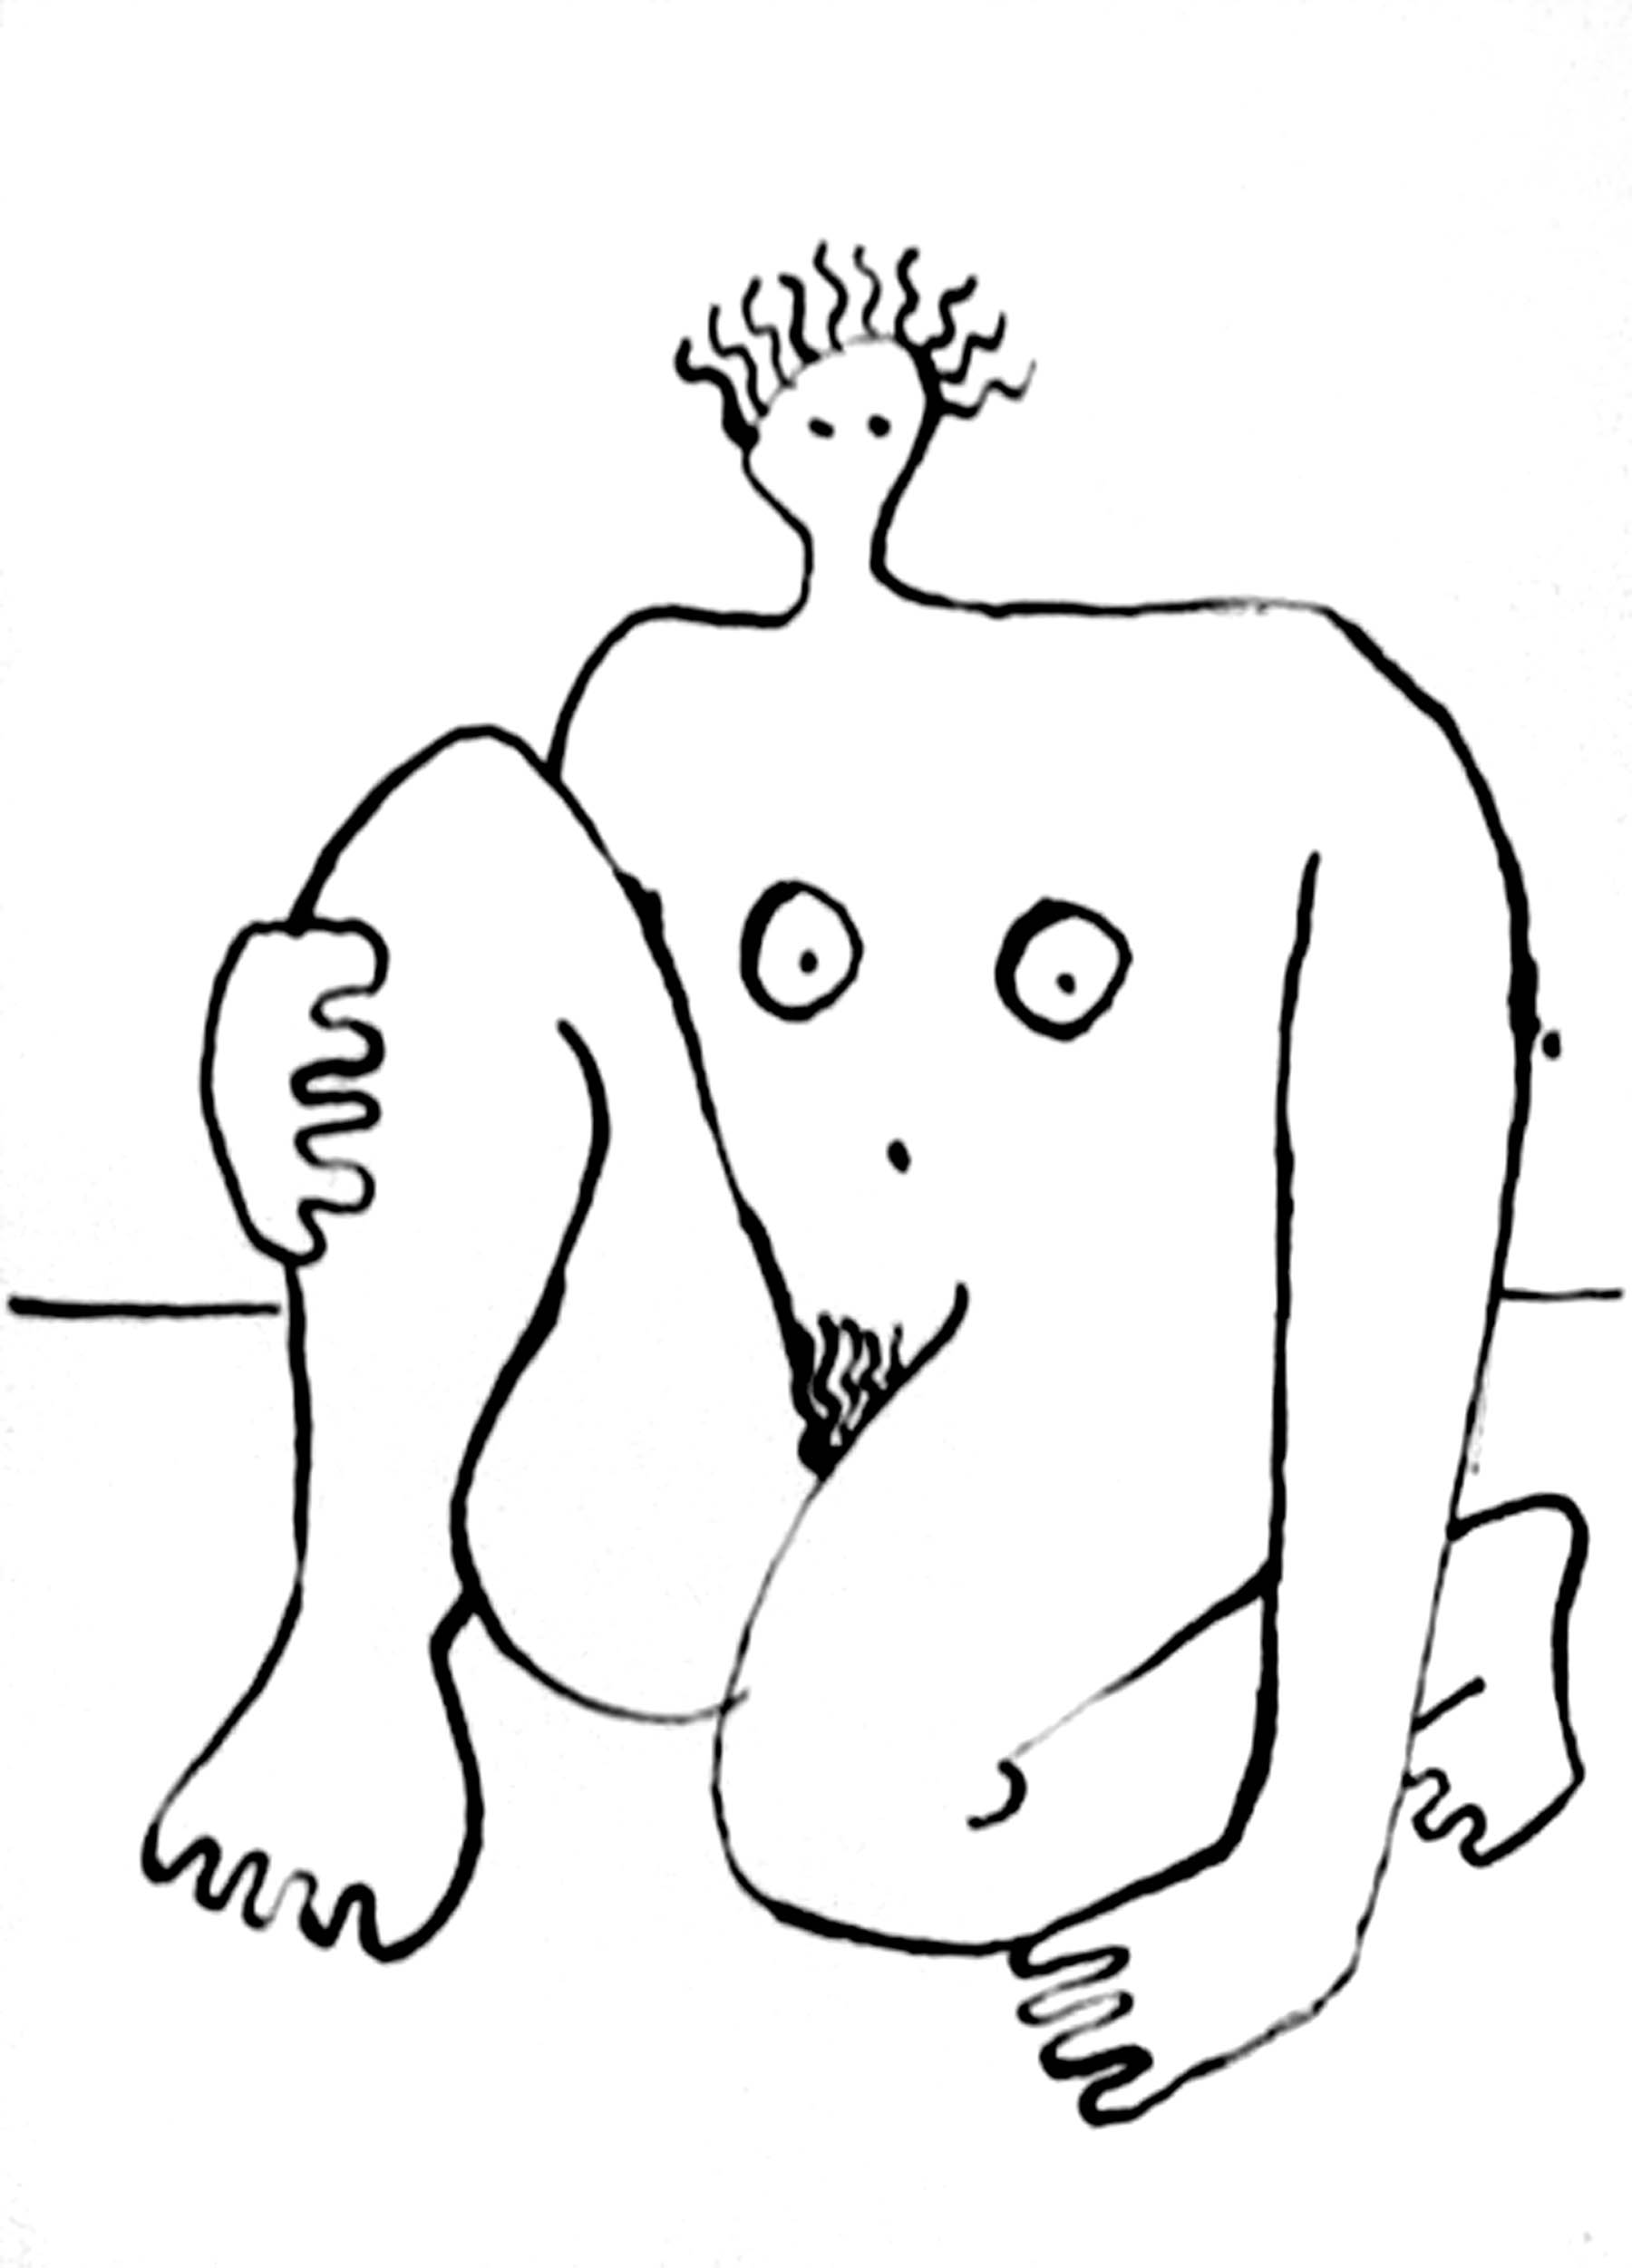 Dibujo de una mujer realizado por Gabriel Ferrater.